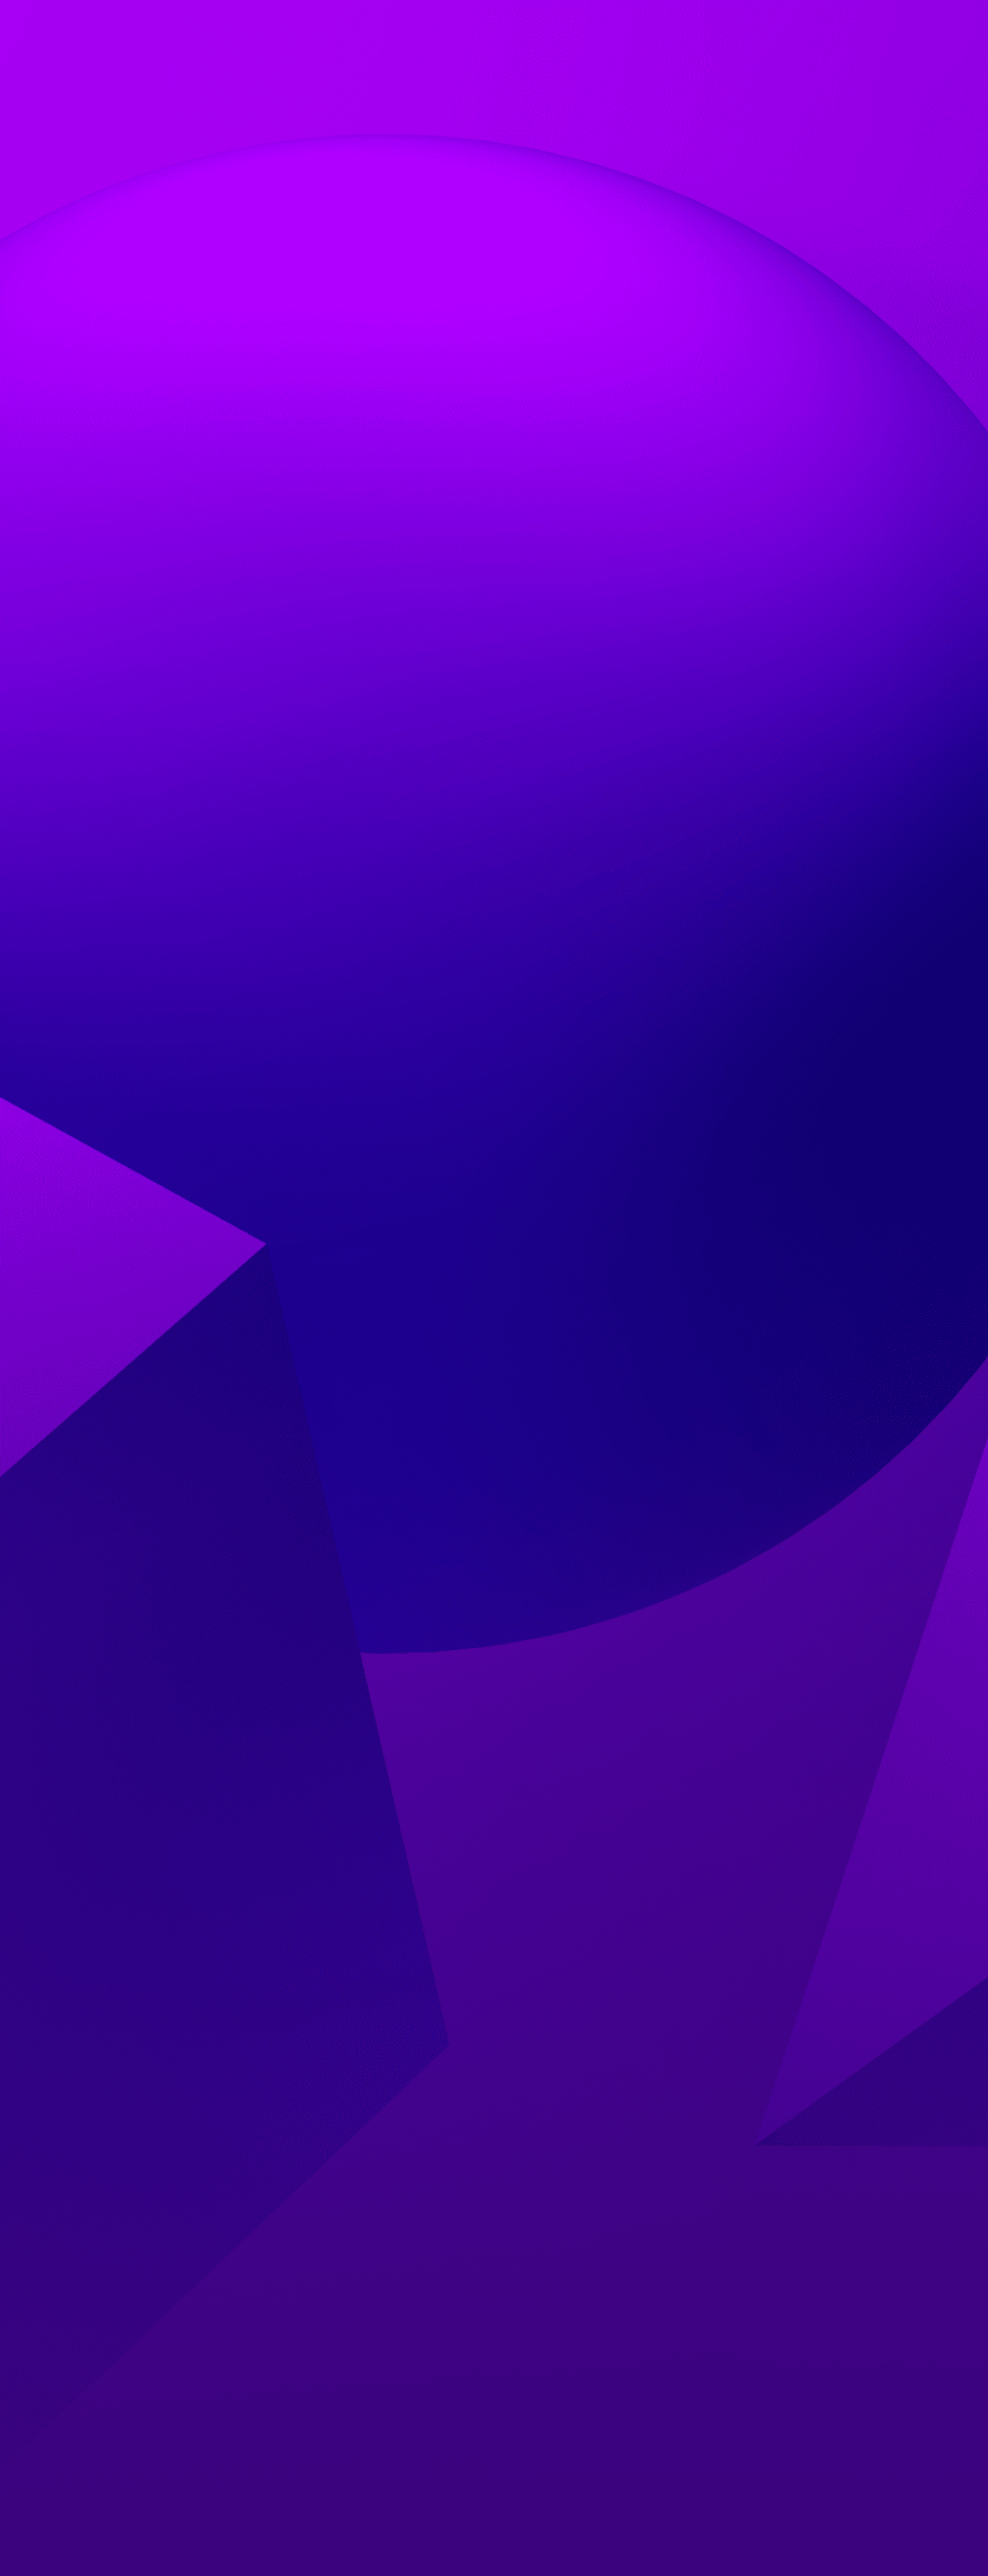 Textúrované fialové pozadie s 3 tvarmi - guľa, kužeľ a kocka